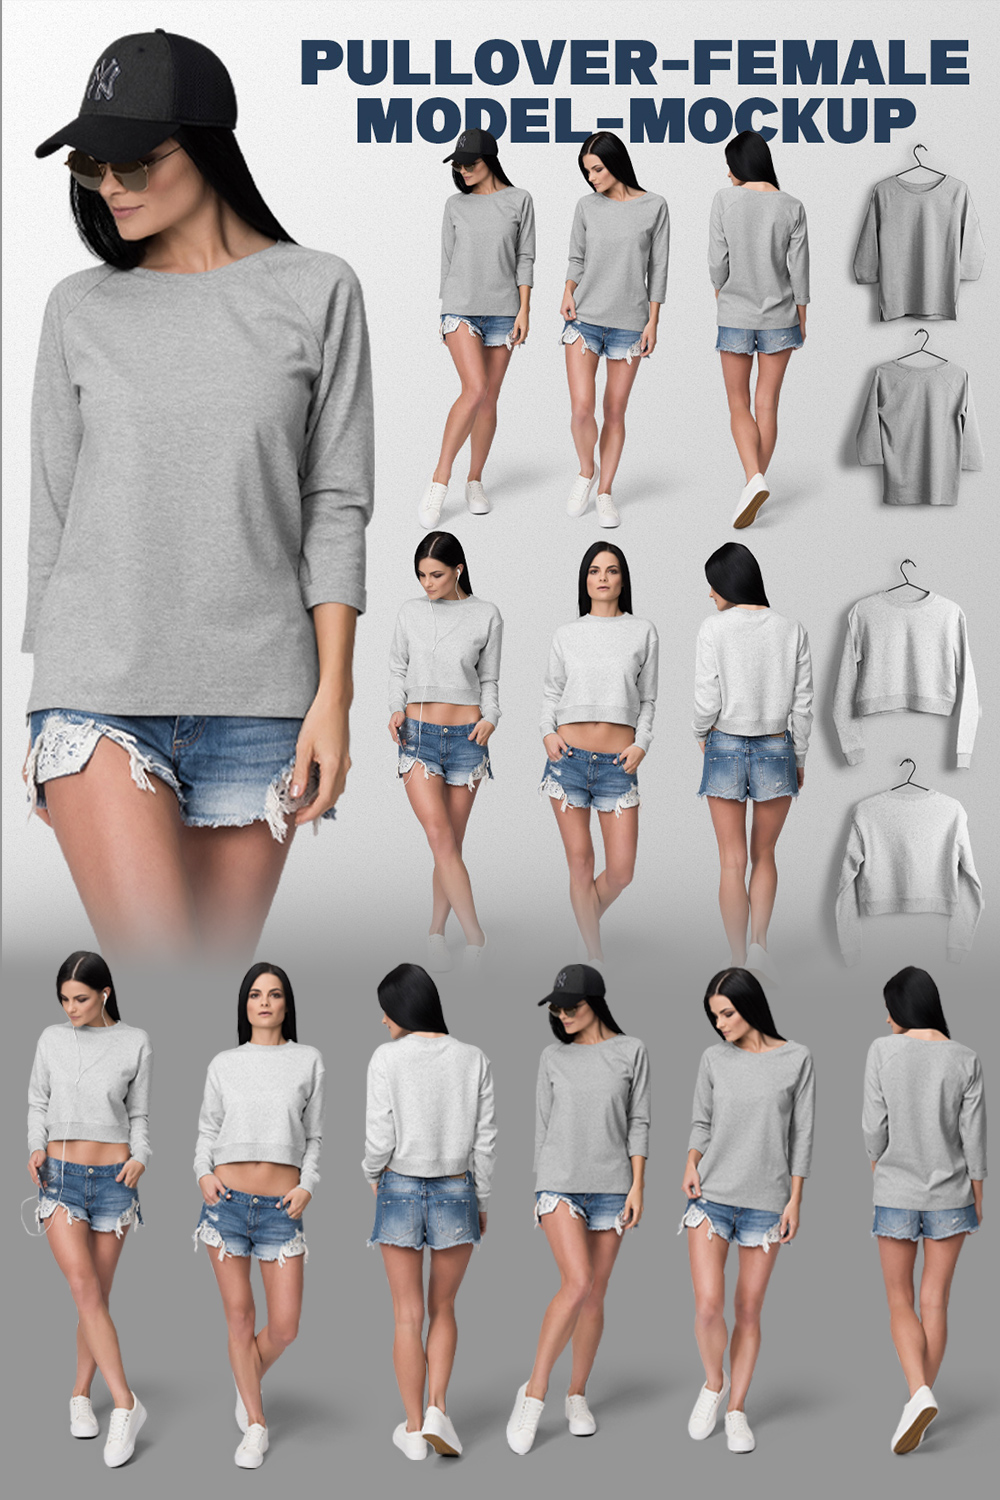 pullover-female-model-mockup bundles pinterest preview image.